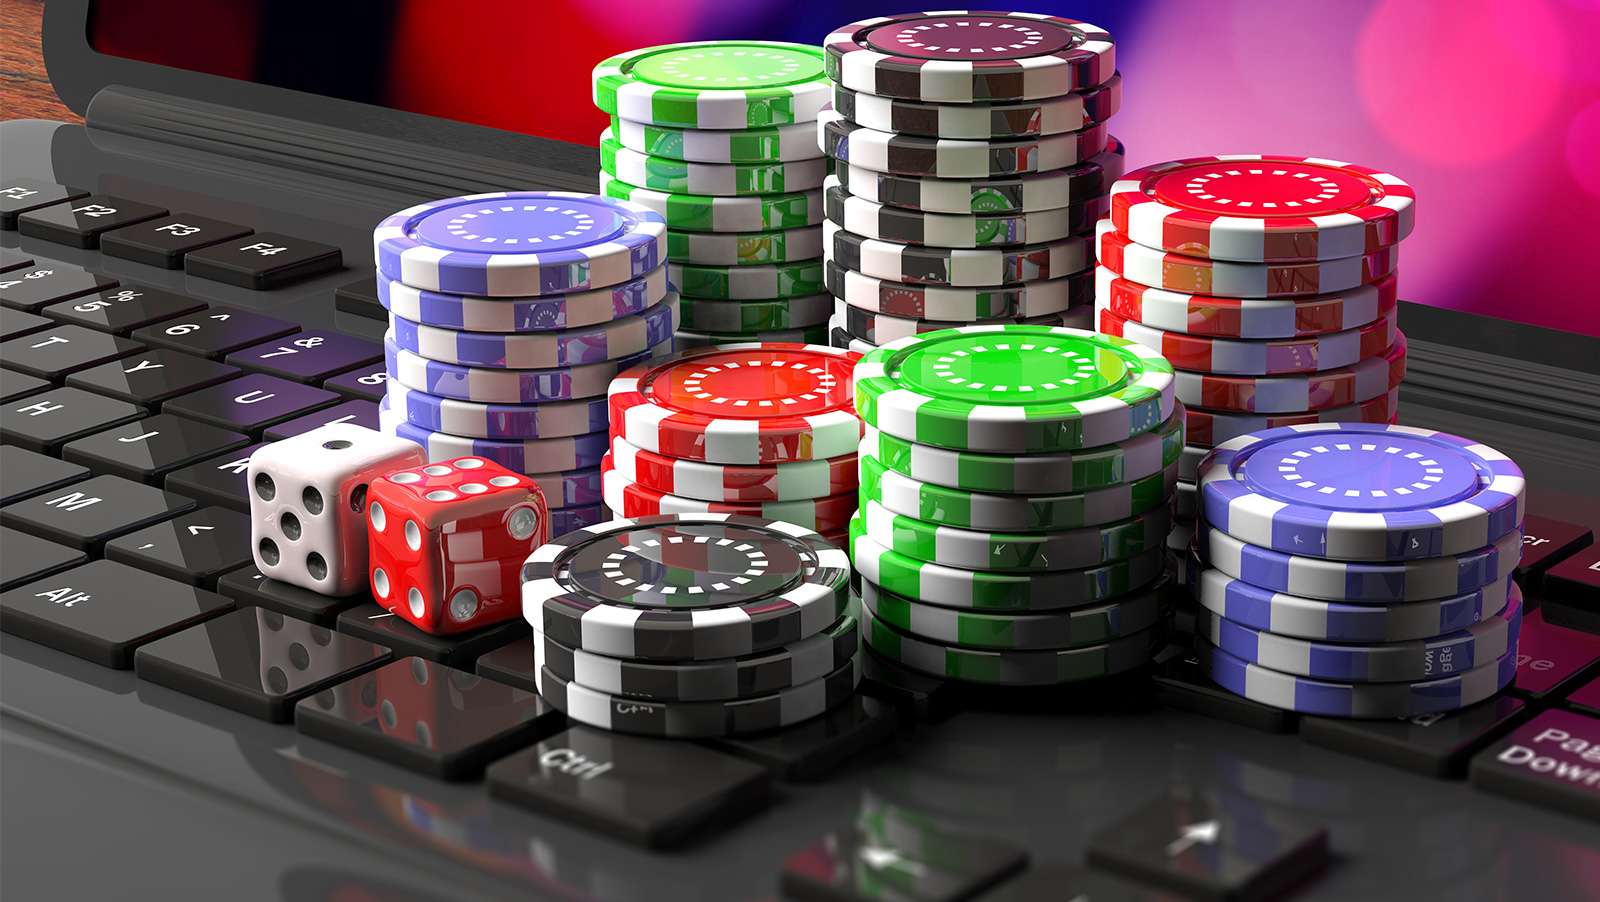 100 maneras en las que la casinos online puede hacerte invencible